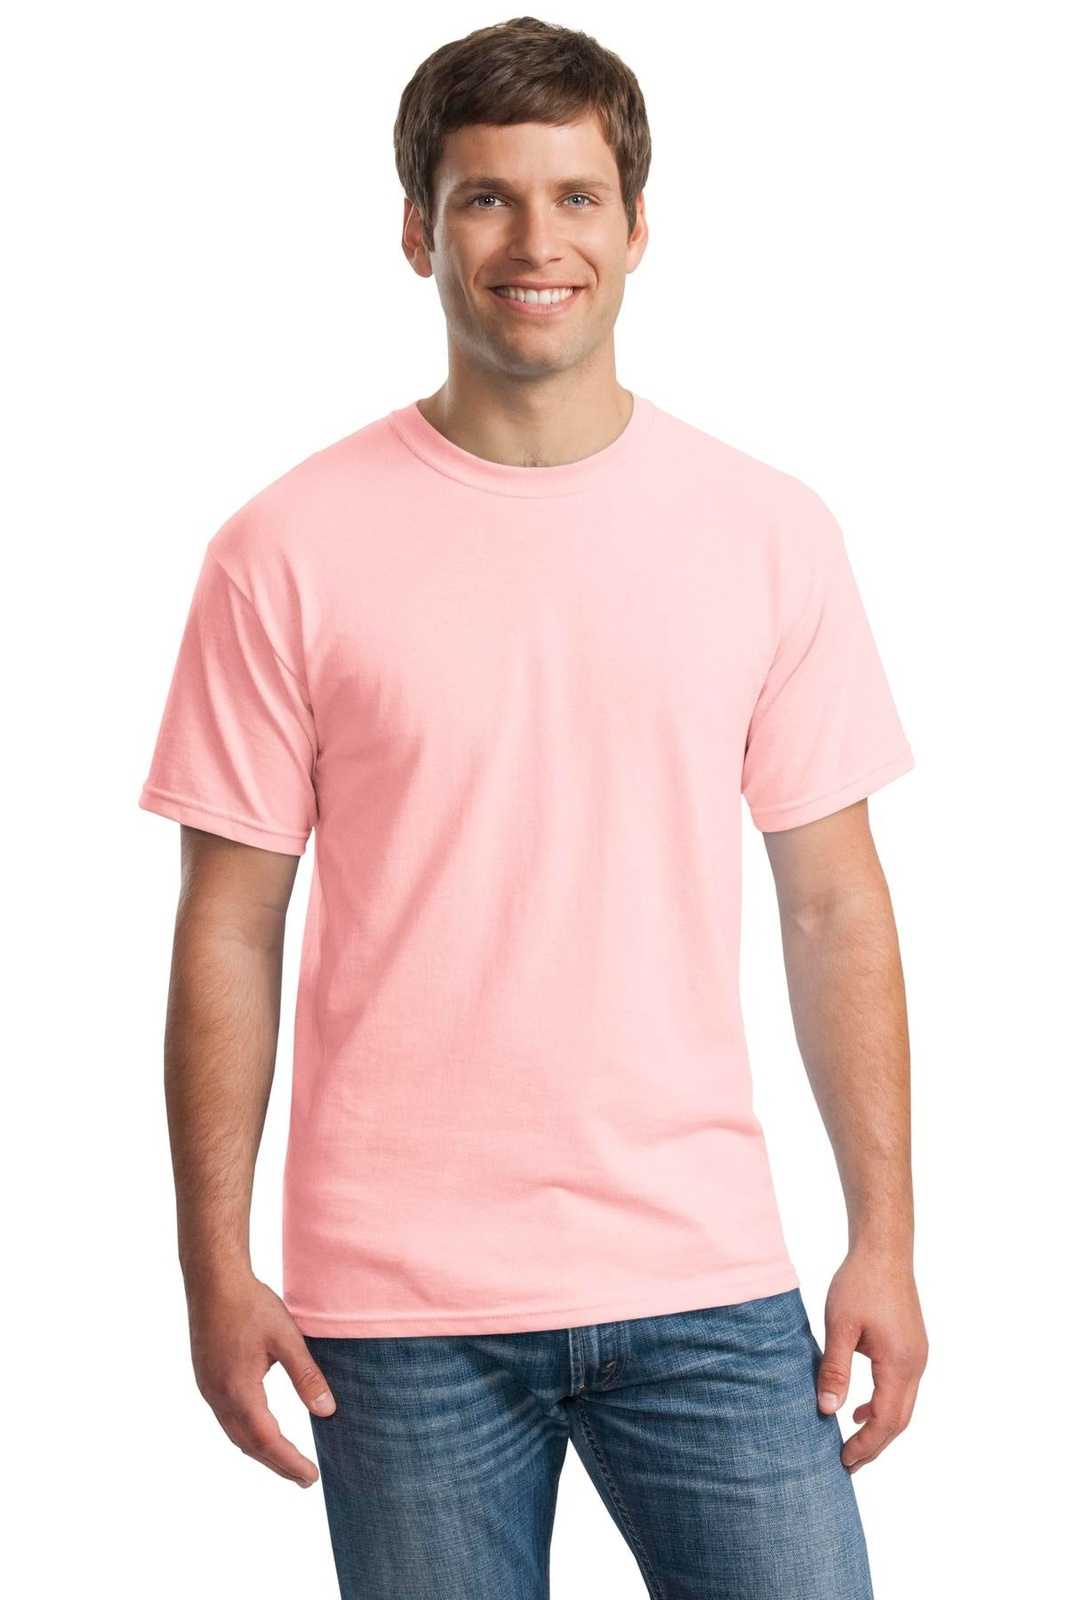 Gildan 5000 Heavy Cotton 100% Cotton T-Shirt - Light Pink - HIT a Double